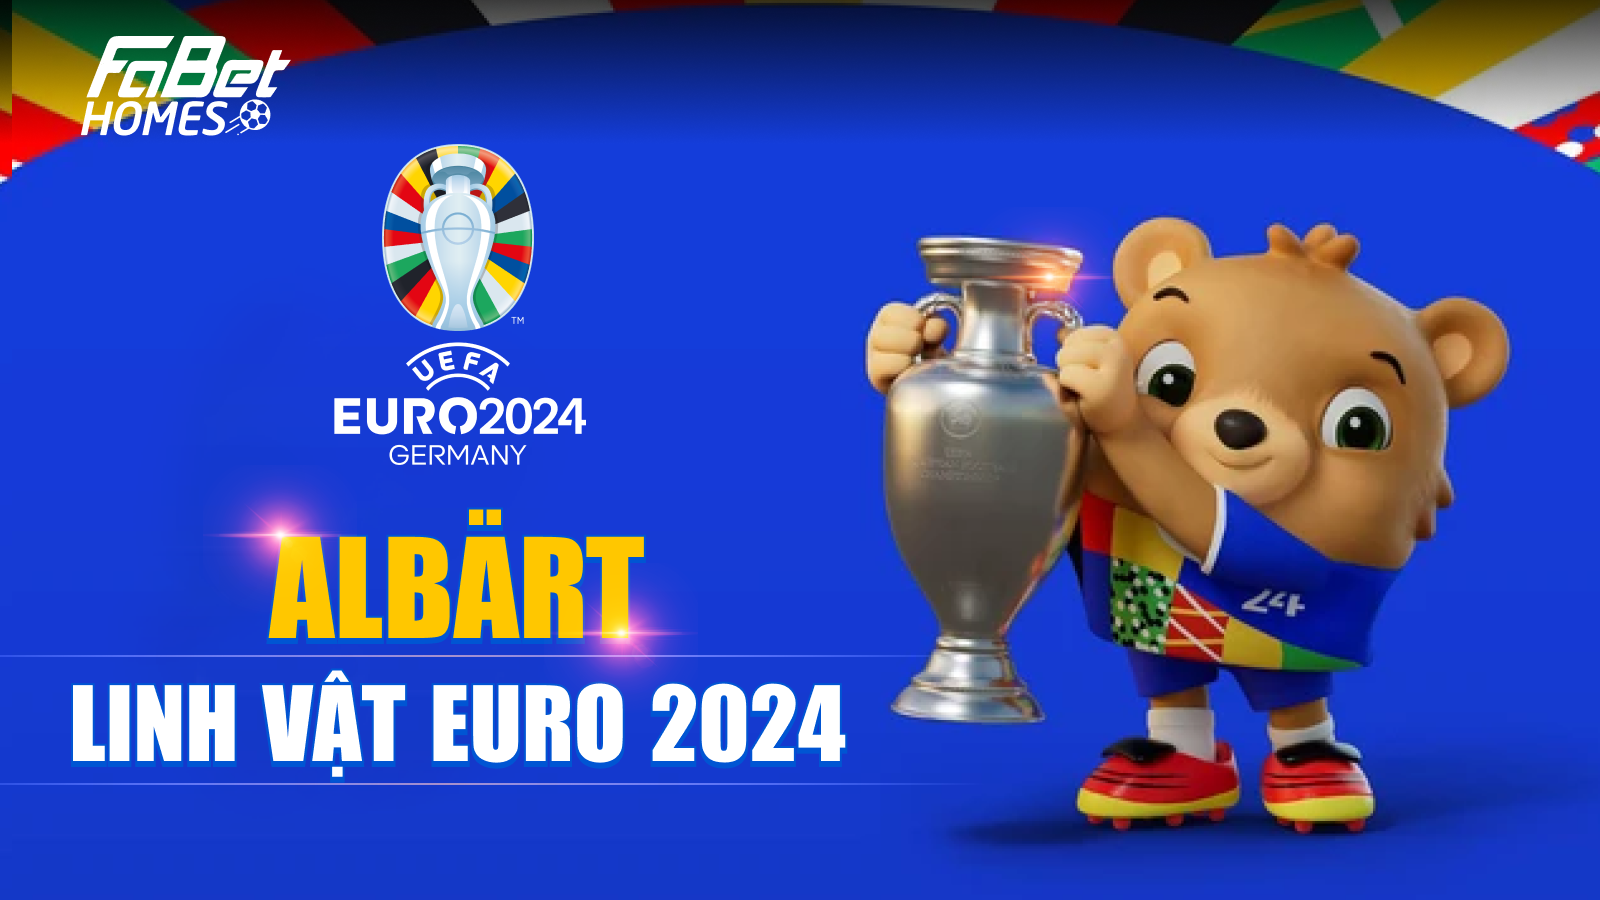 Linh vật chính thức của giải đấu Euro tên Albärt